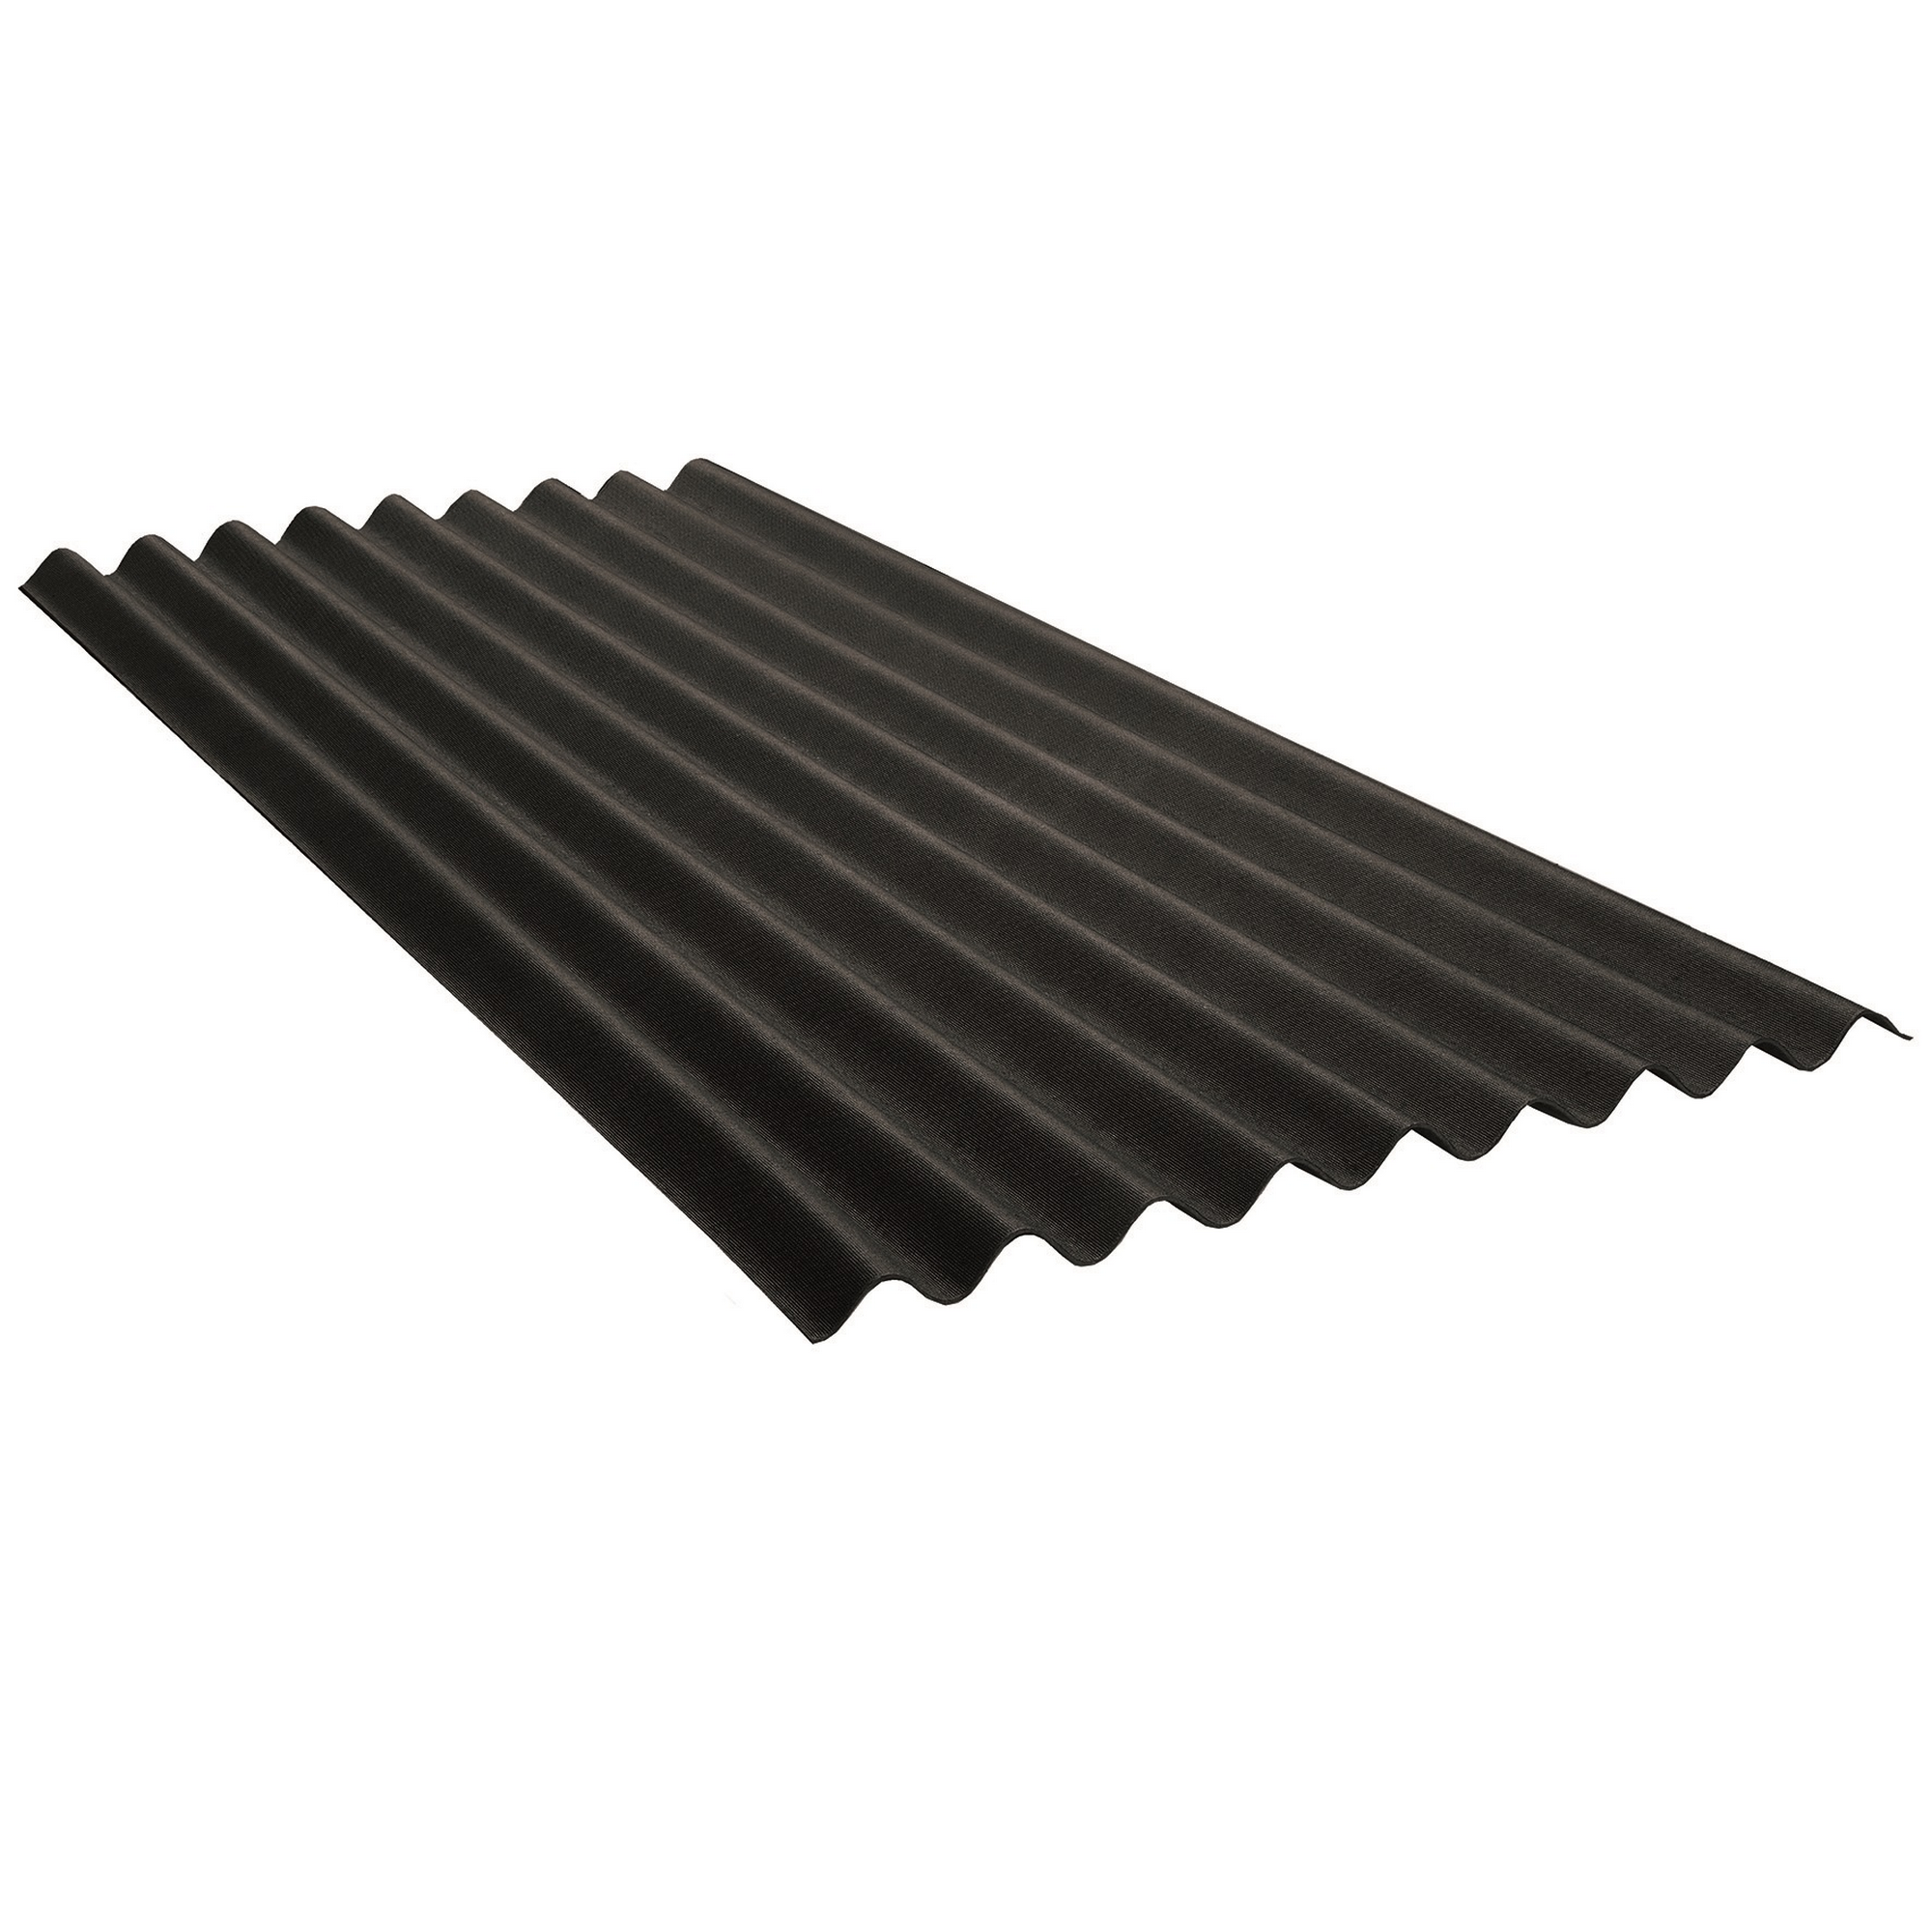 Dach- und Wandplatte 'Base' schwarz 200 x 85,5 x 0,26 cm + product picture